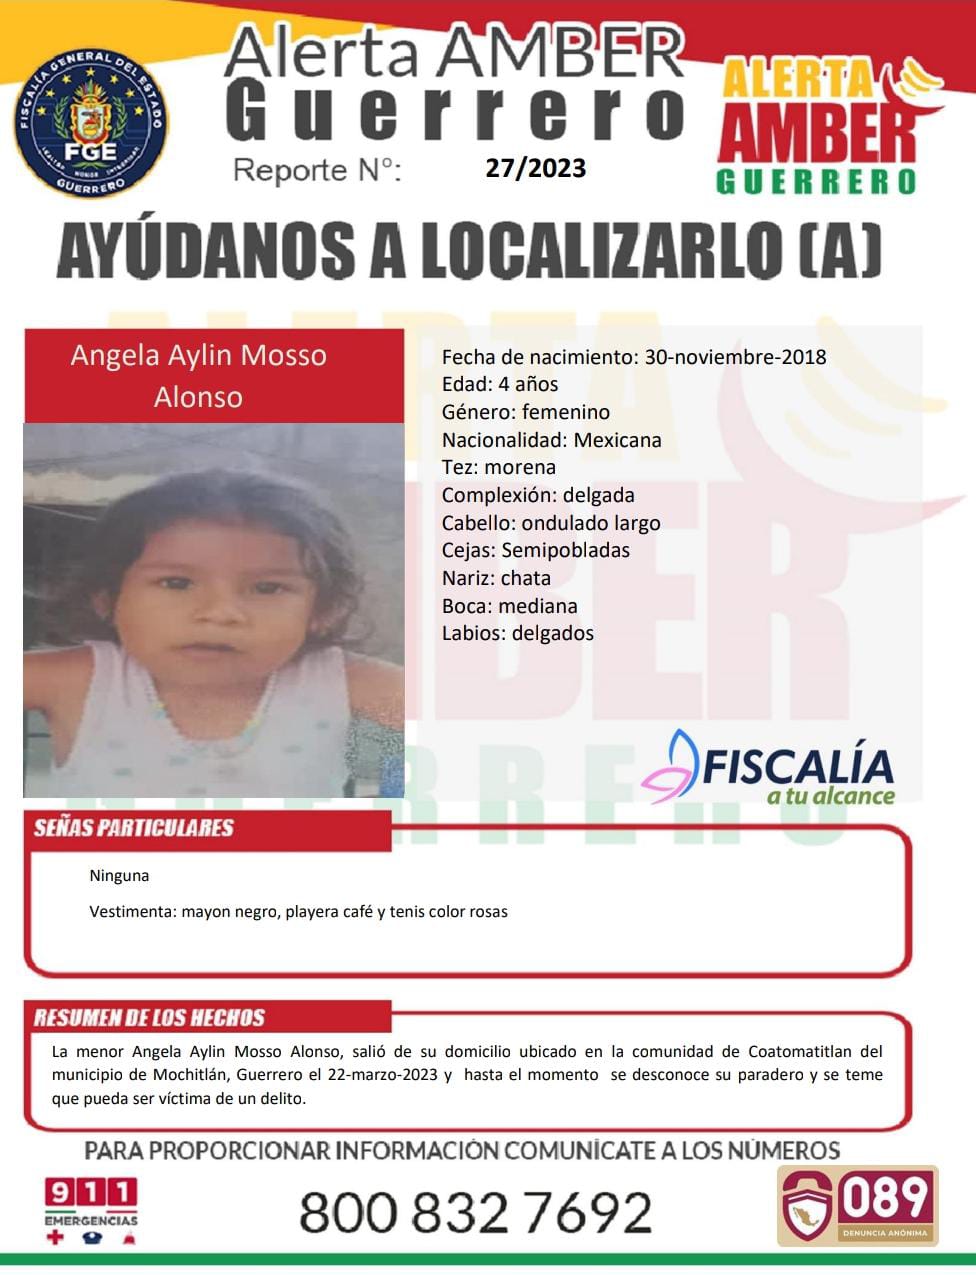 Fiscalía General Del Estado Solicita Su Colaboración Para Localizar A La Menor Angela Aylin Mosso Alonso.